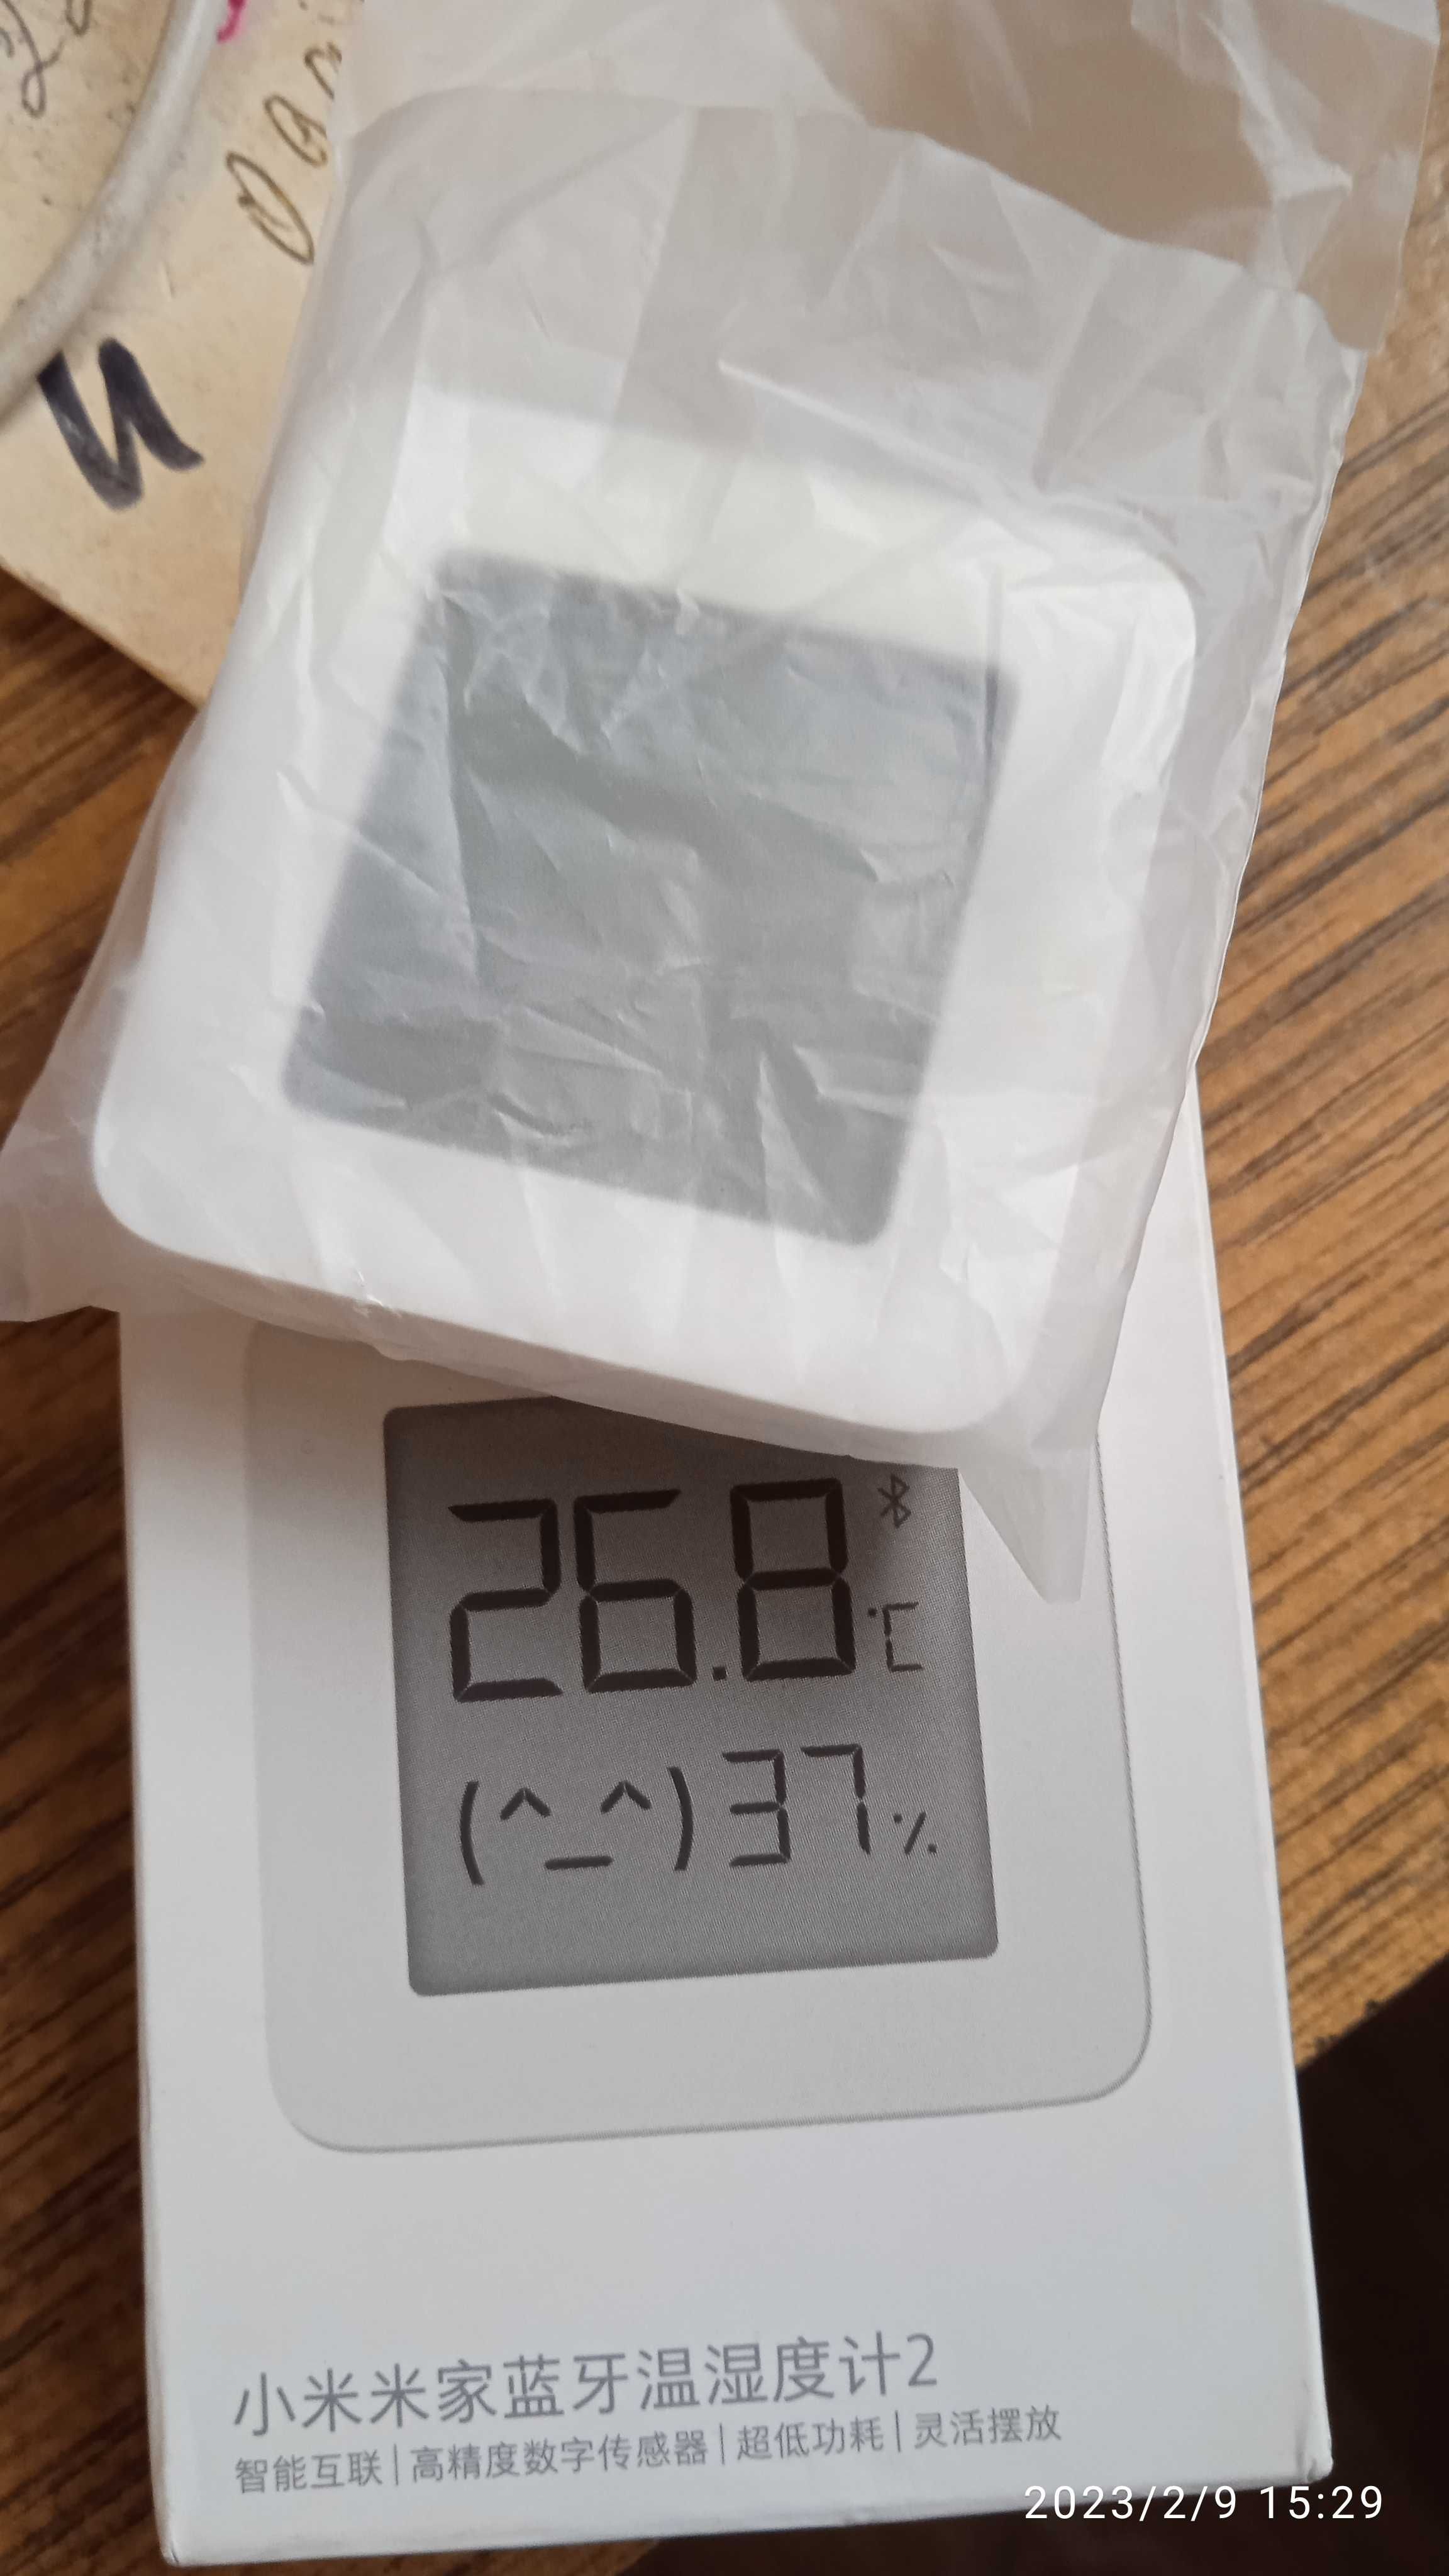 Термометр-гигрометр Mi Temperature and Humidity Monitor 2